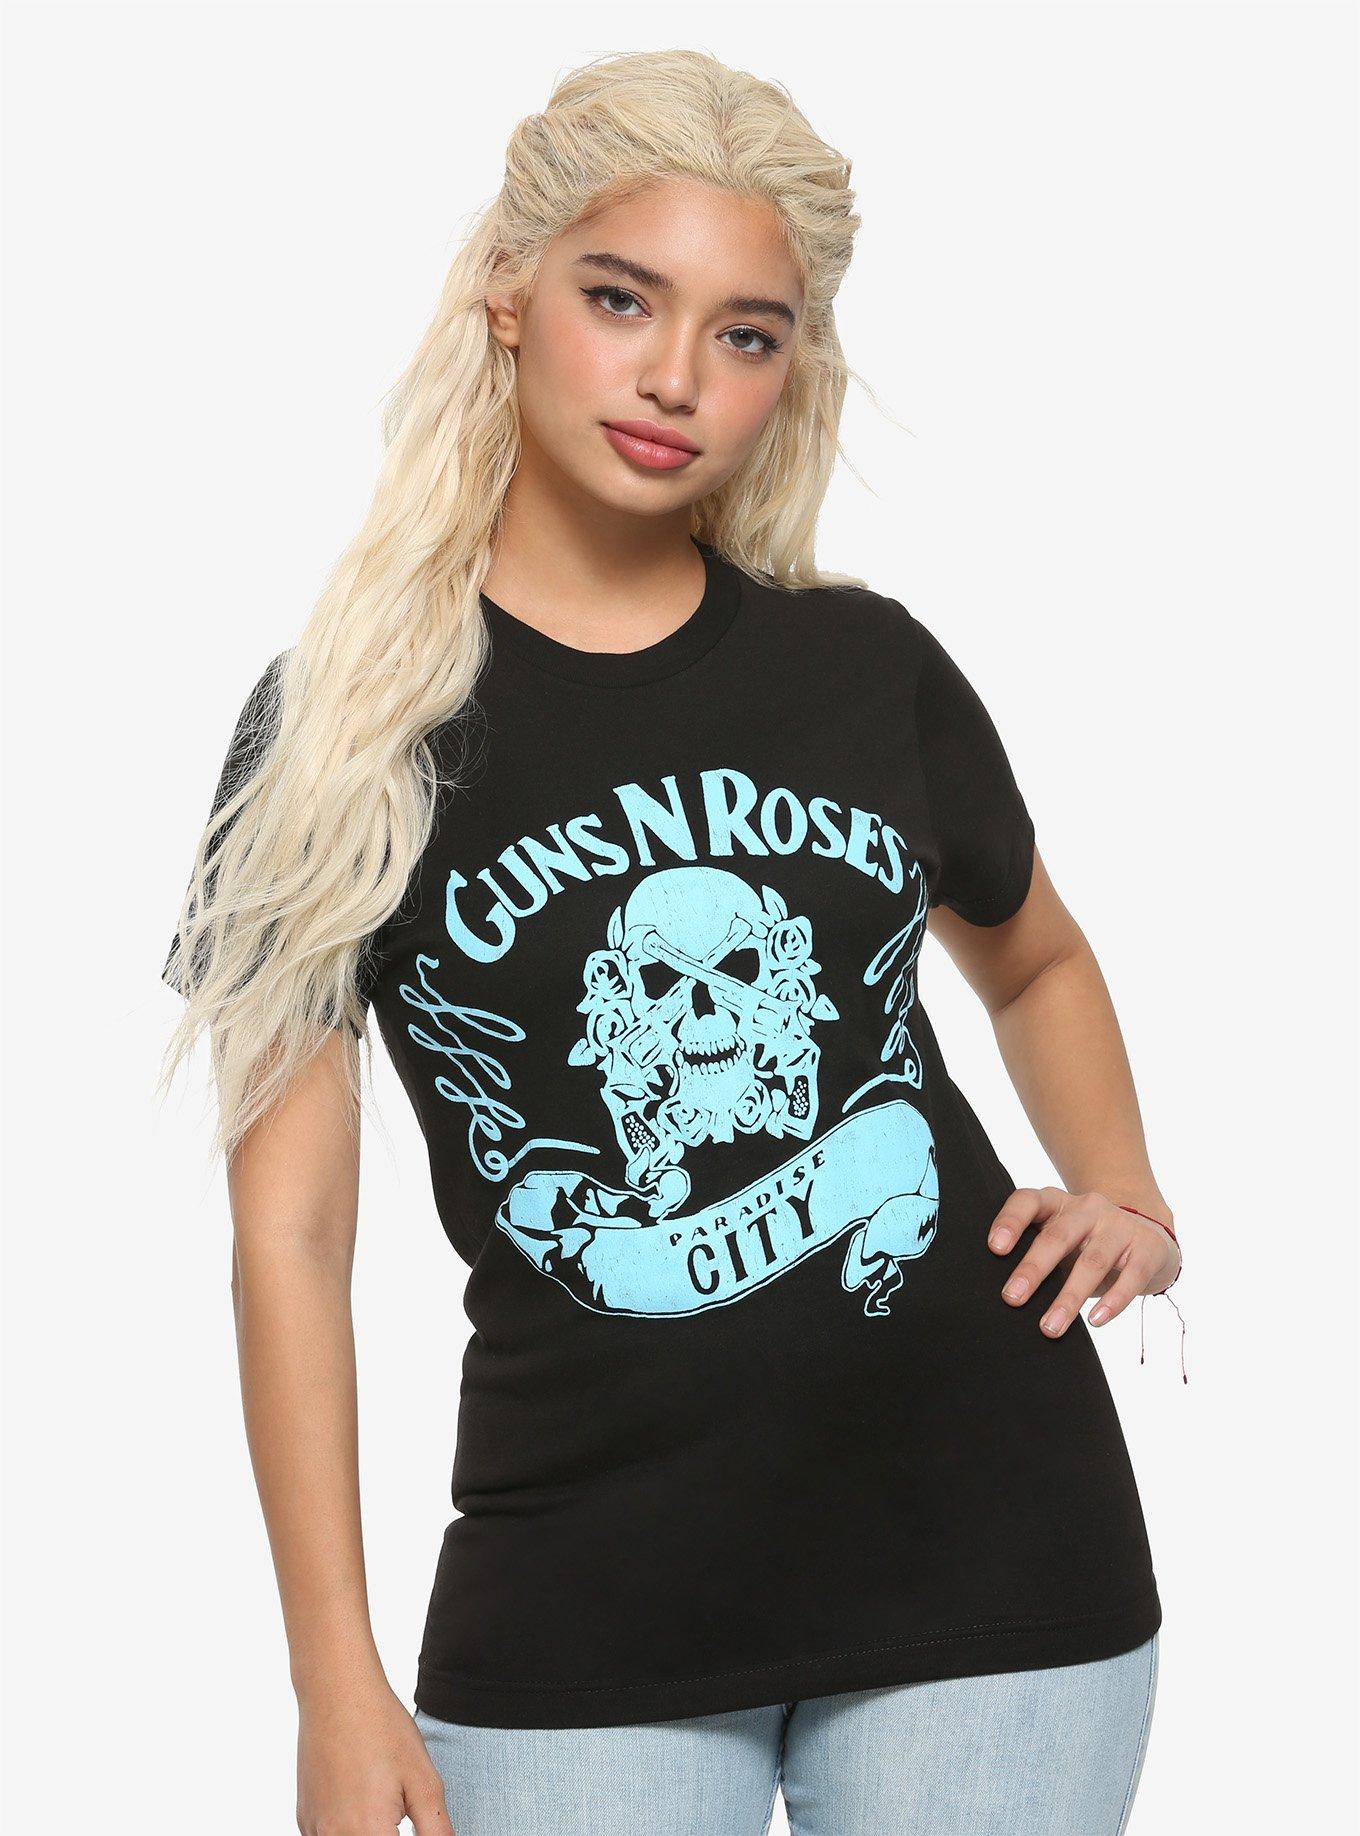 Guns N' Roses Paradise City Logo Girls T-Shirt, BLACK, hi-res